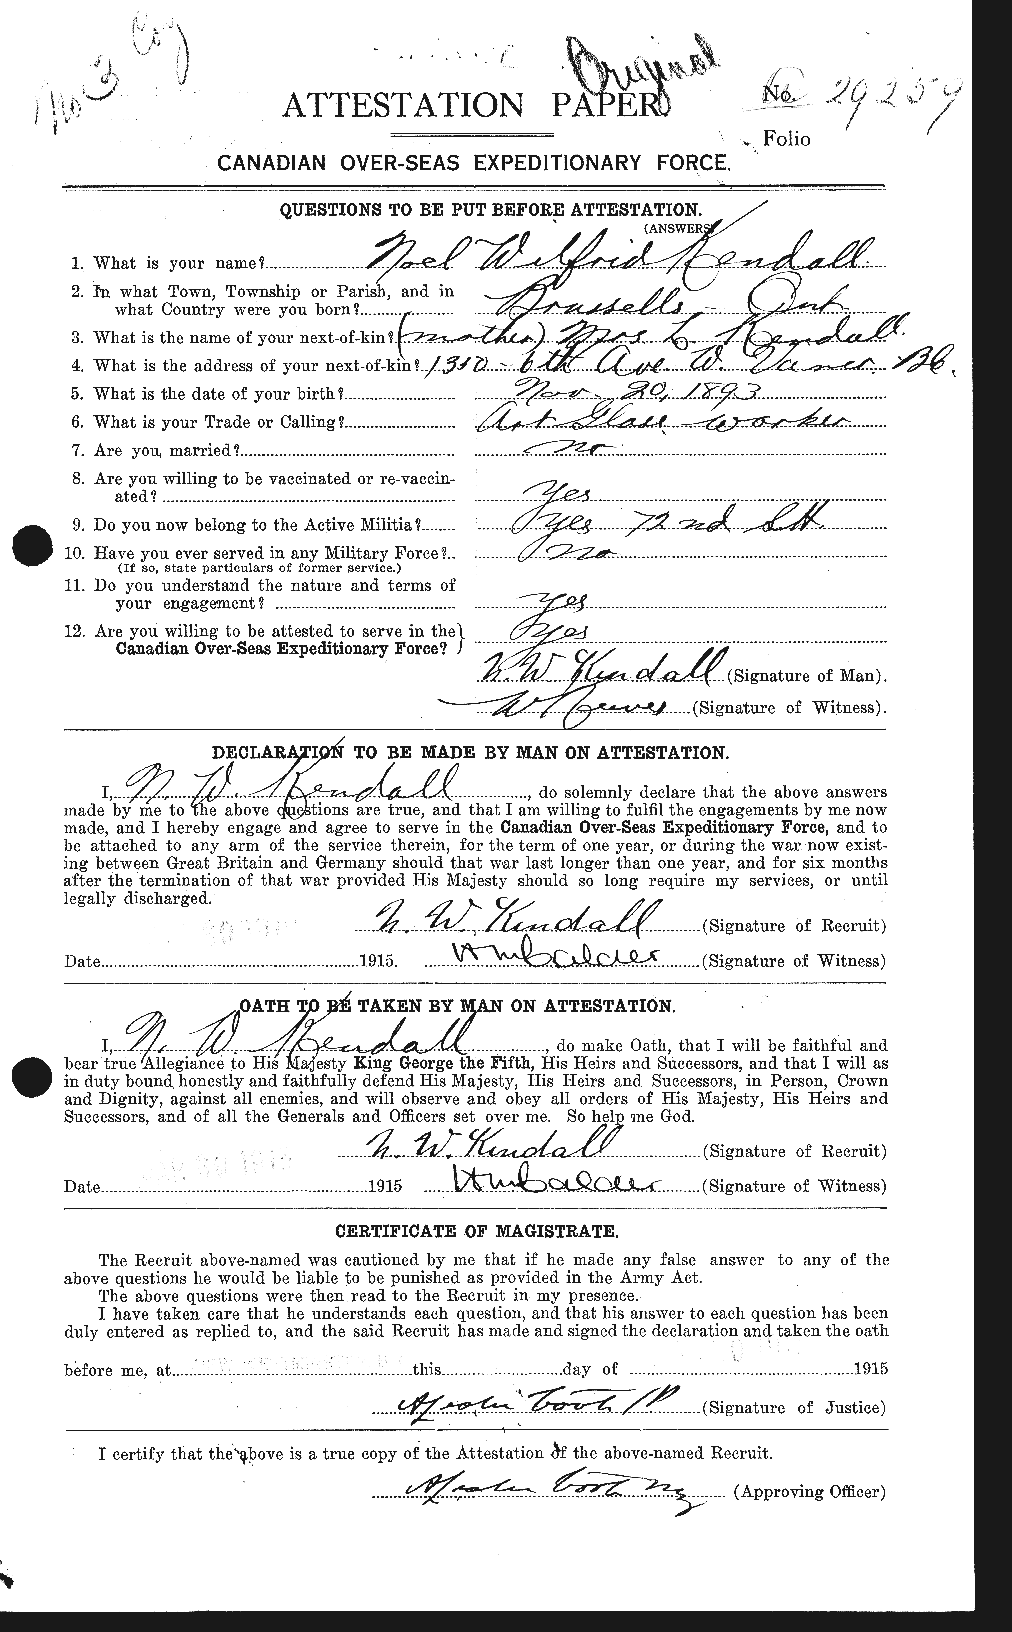 Dossiers du Personnel de la Première Guerre mondiale - CEC 435593a